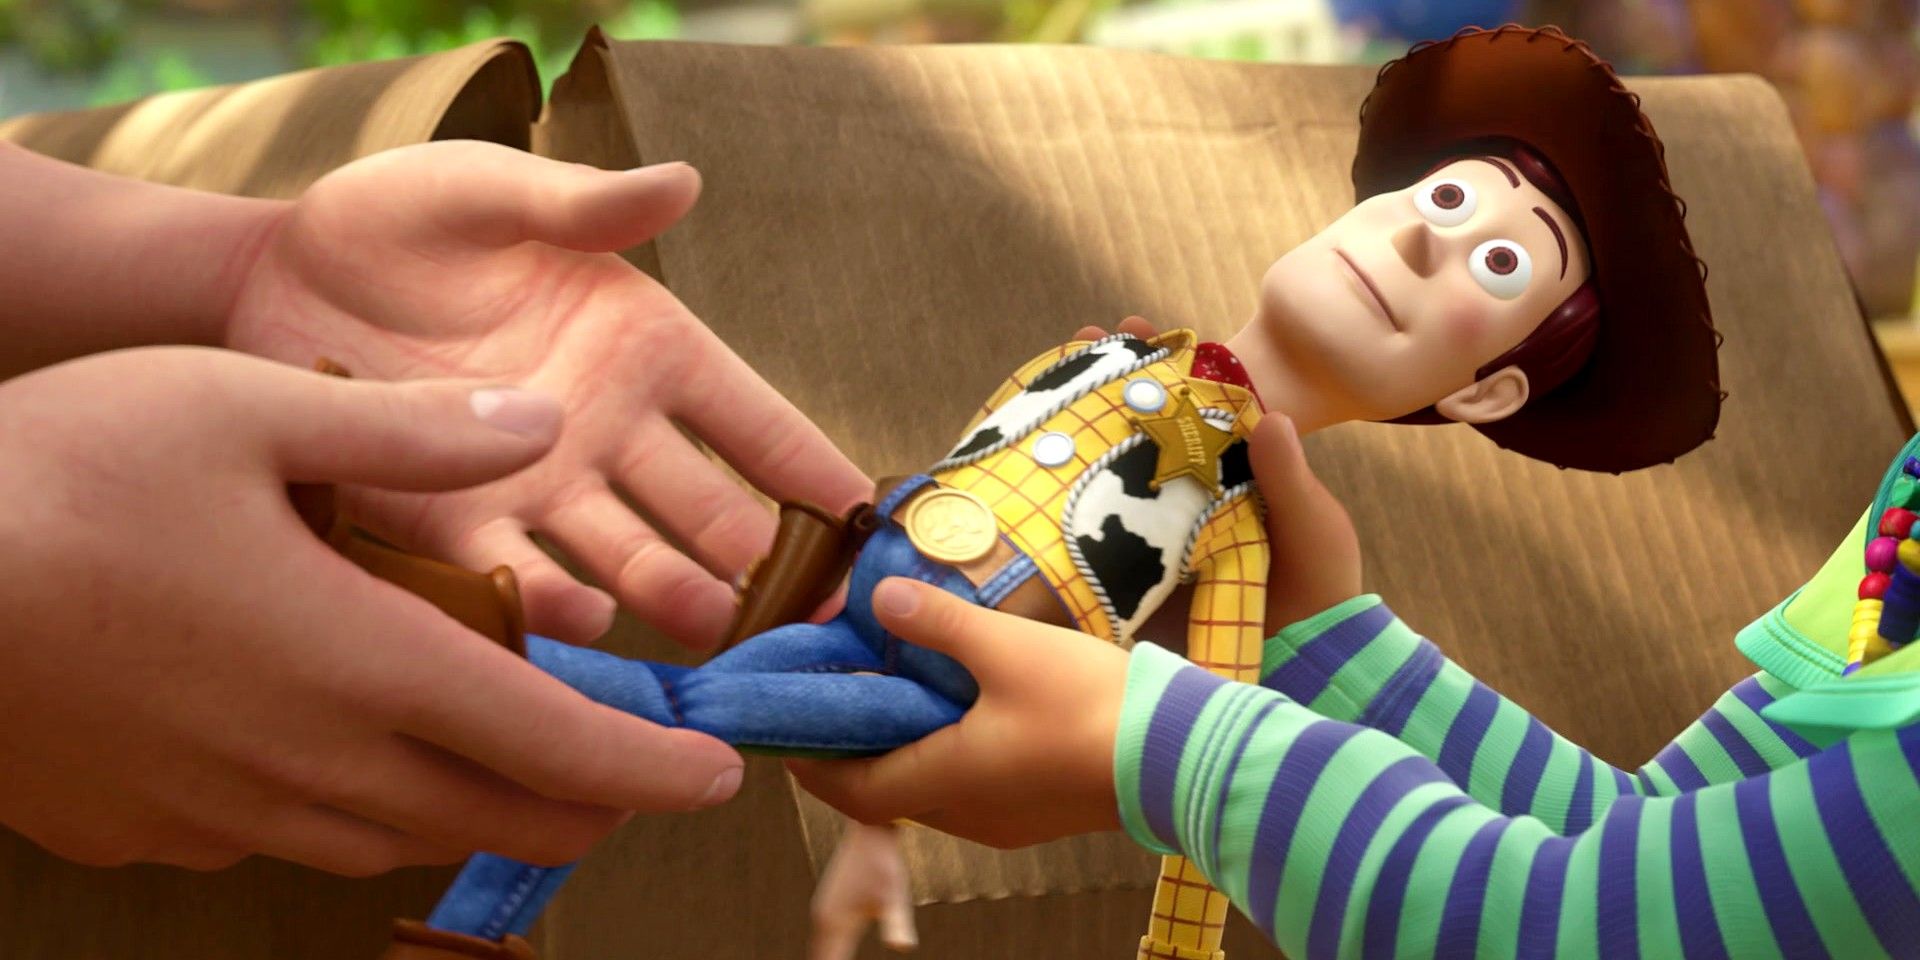 Нового плана выпуска Pixar может быть достаточно, чтобы осчастливить всех (и изменить ситуацию для Disney)